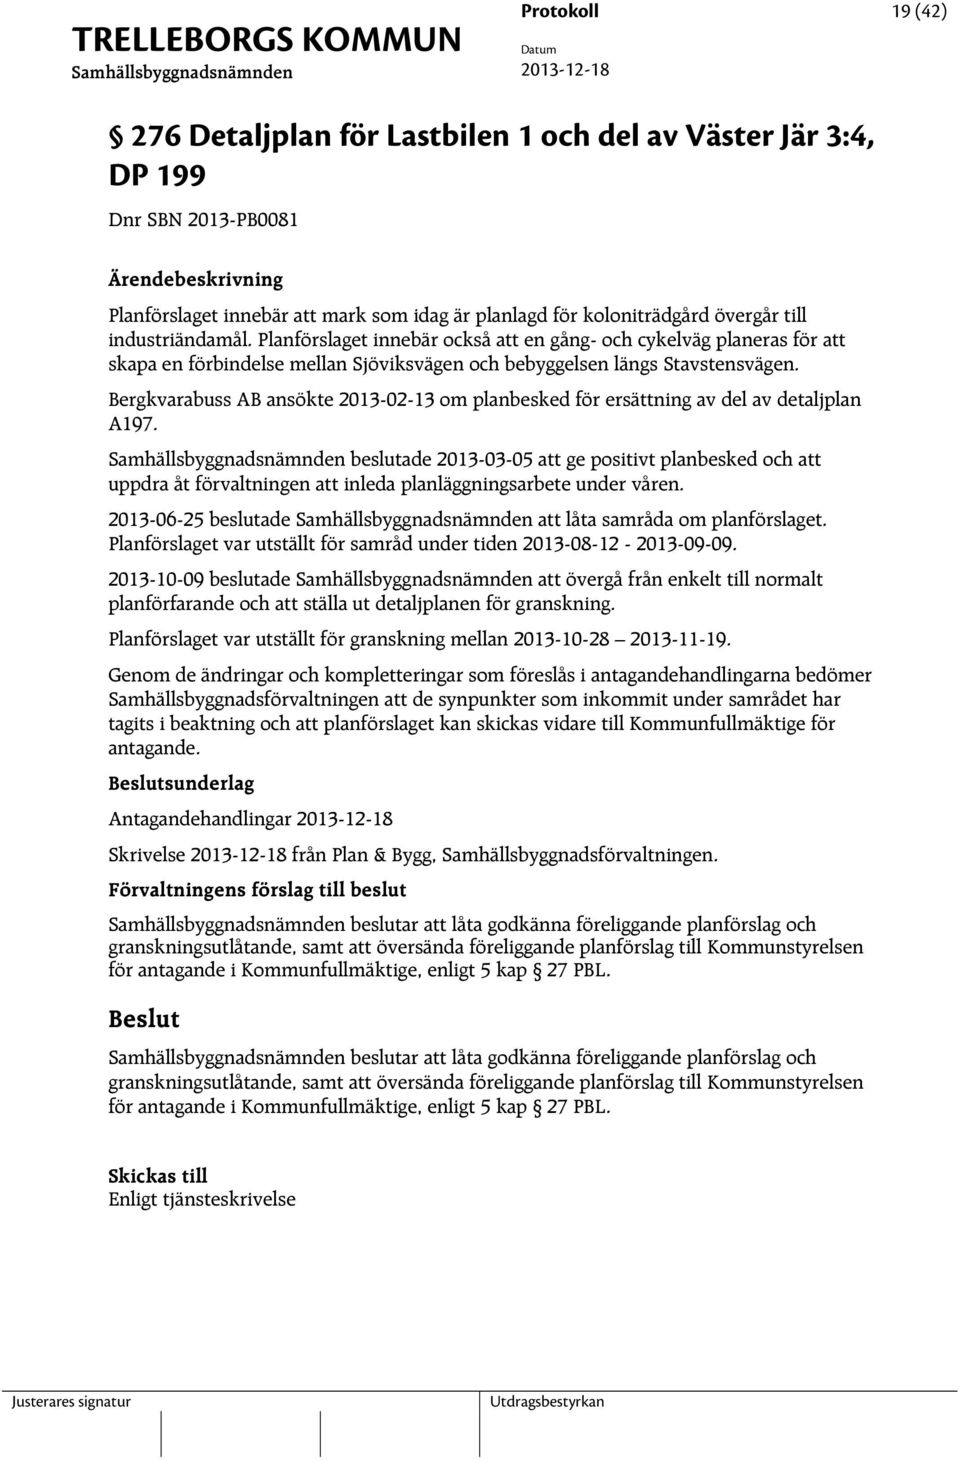 Bergkvarabuss AB ansökte 2013-02-13 om planbesked för ersättning av del av detaljplan A197.